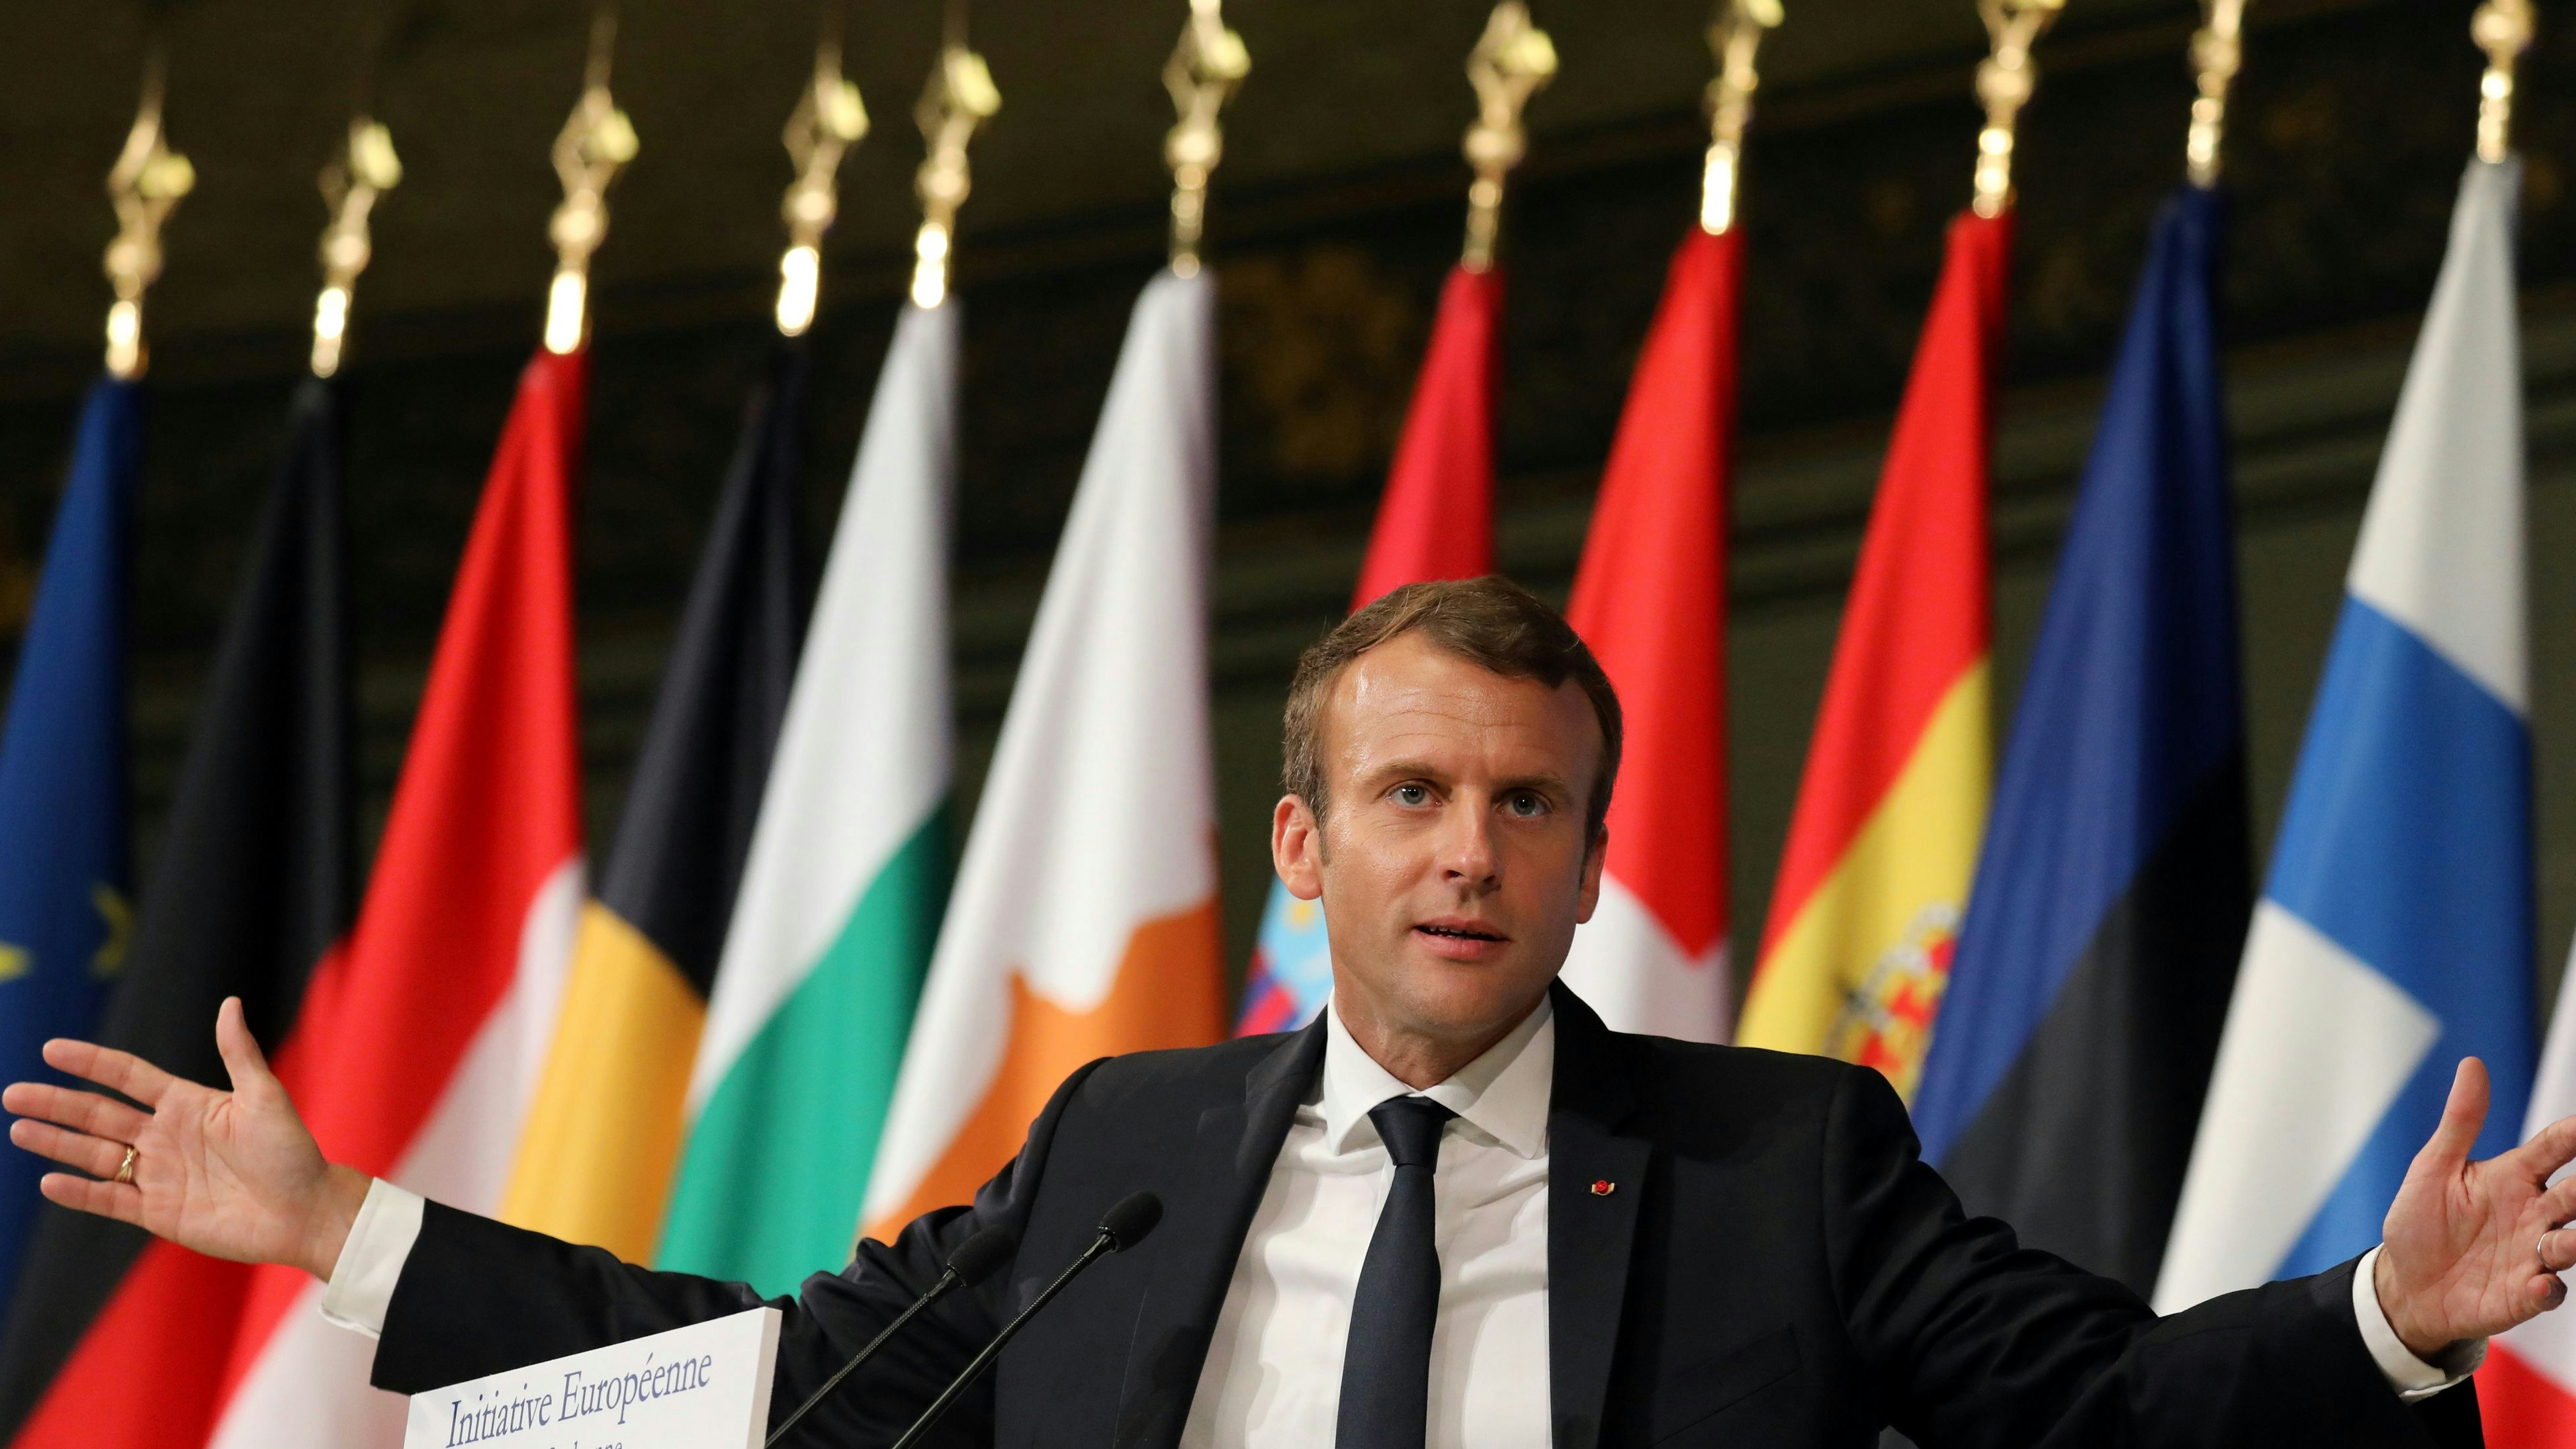 Der französische Präsident Emmanuel Macron bei seiner ersten Europarede am 26. September 2017 an der Sorbonne